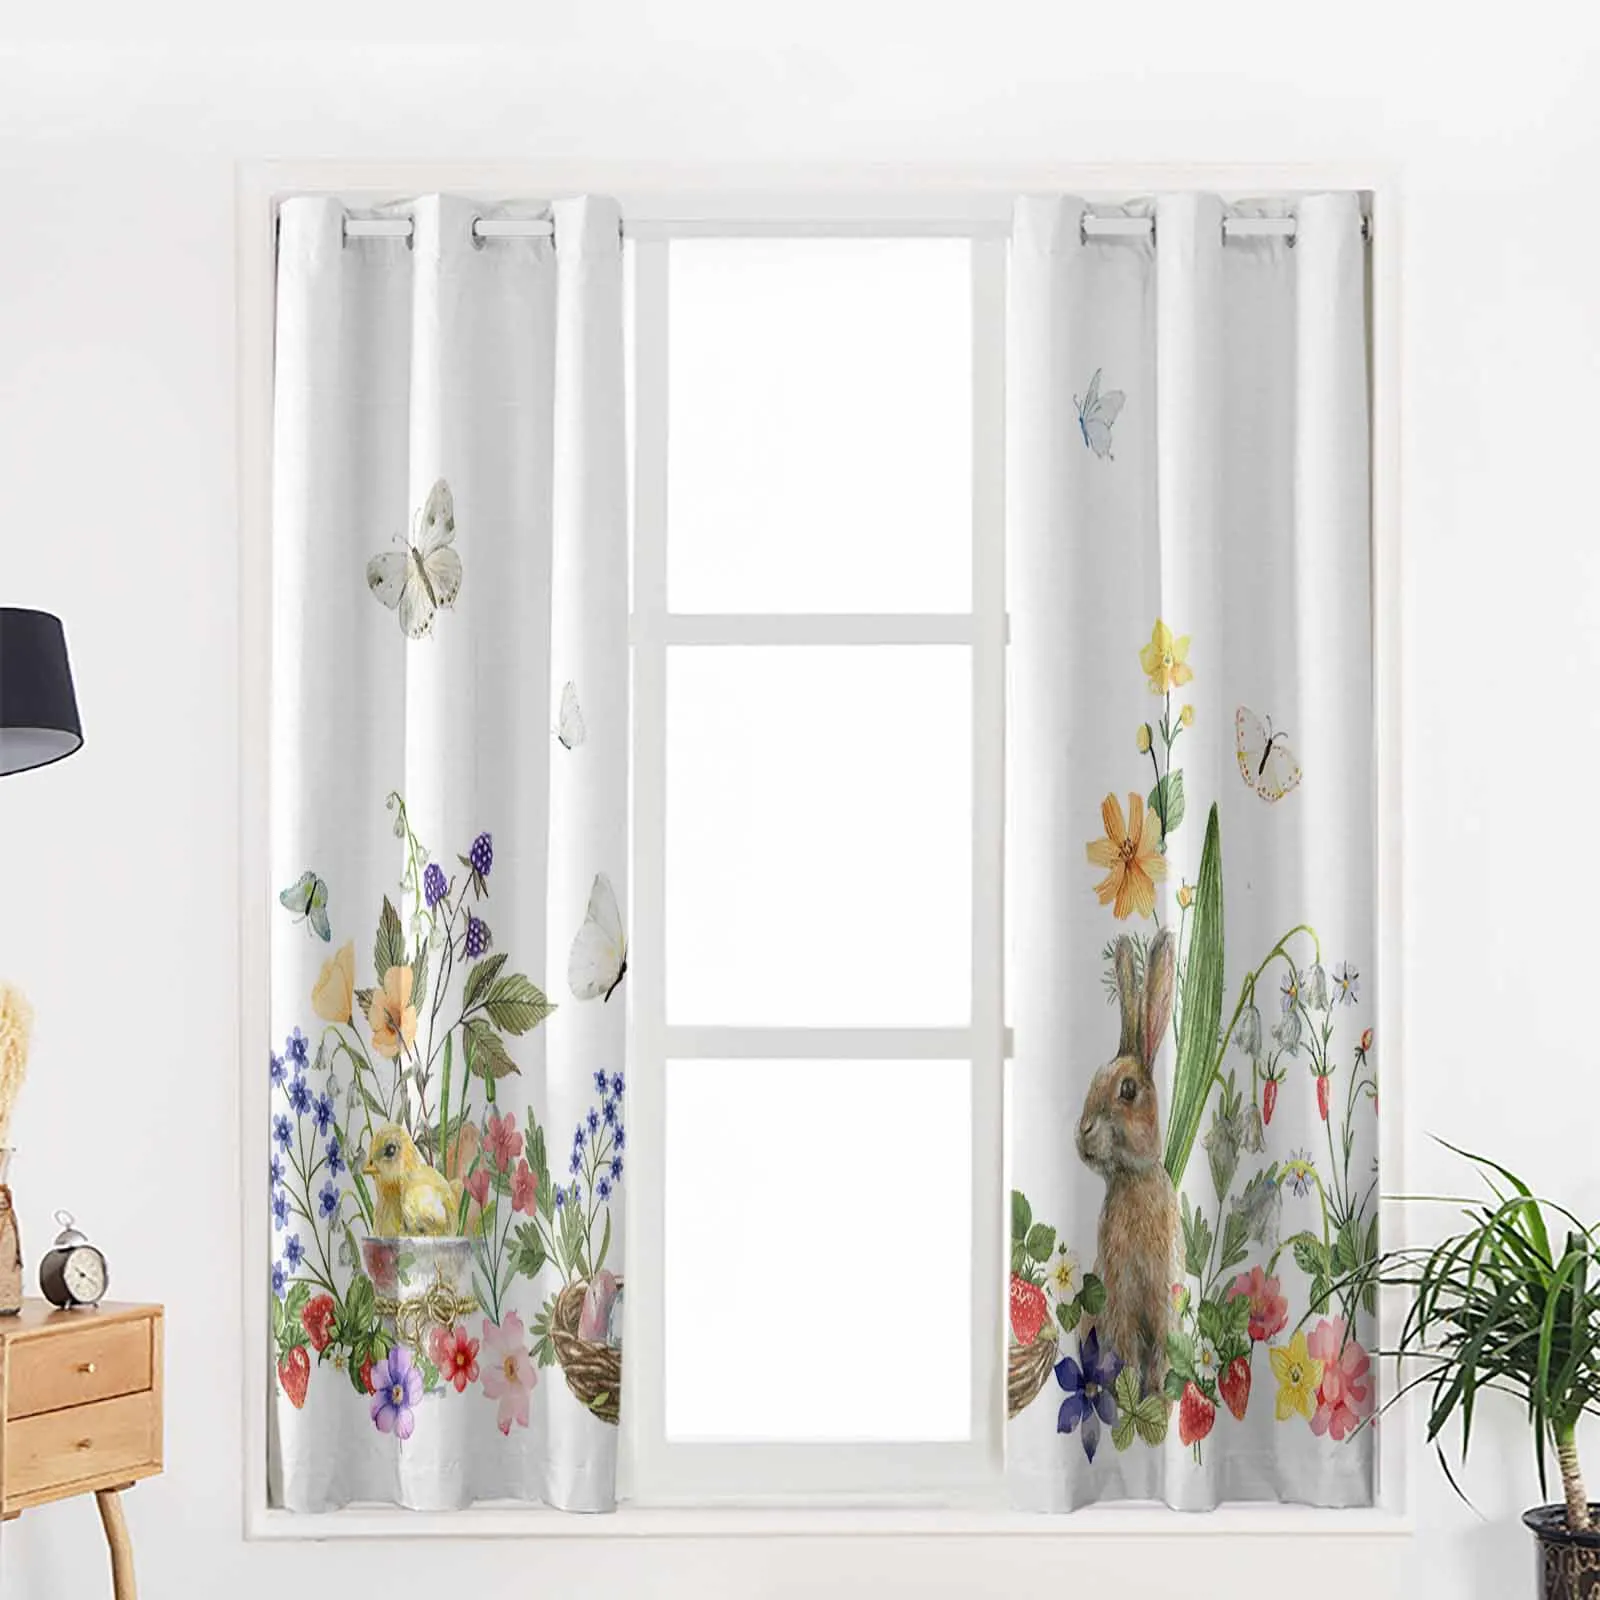 Пасхальный кролик, весенние цветы, бабочки, шторы для гостиной, роскошный декор спальни, шторы для кухни, шторы для балкона. Изображение 2